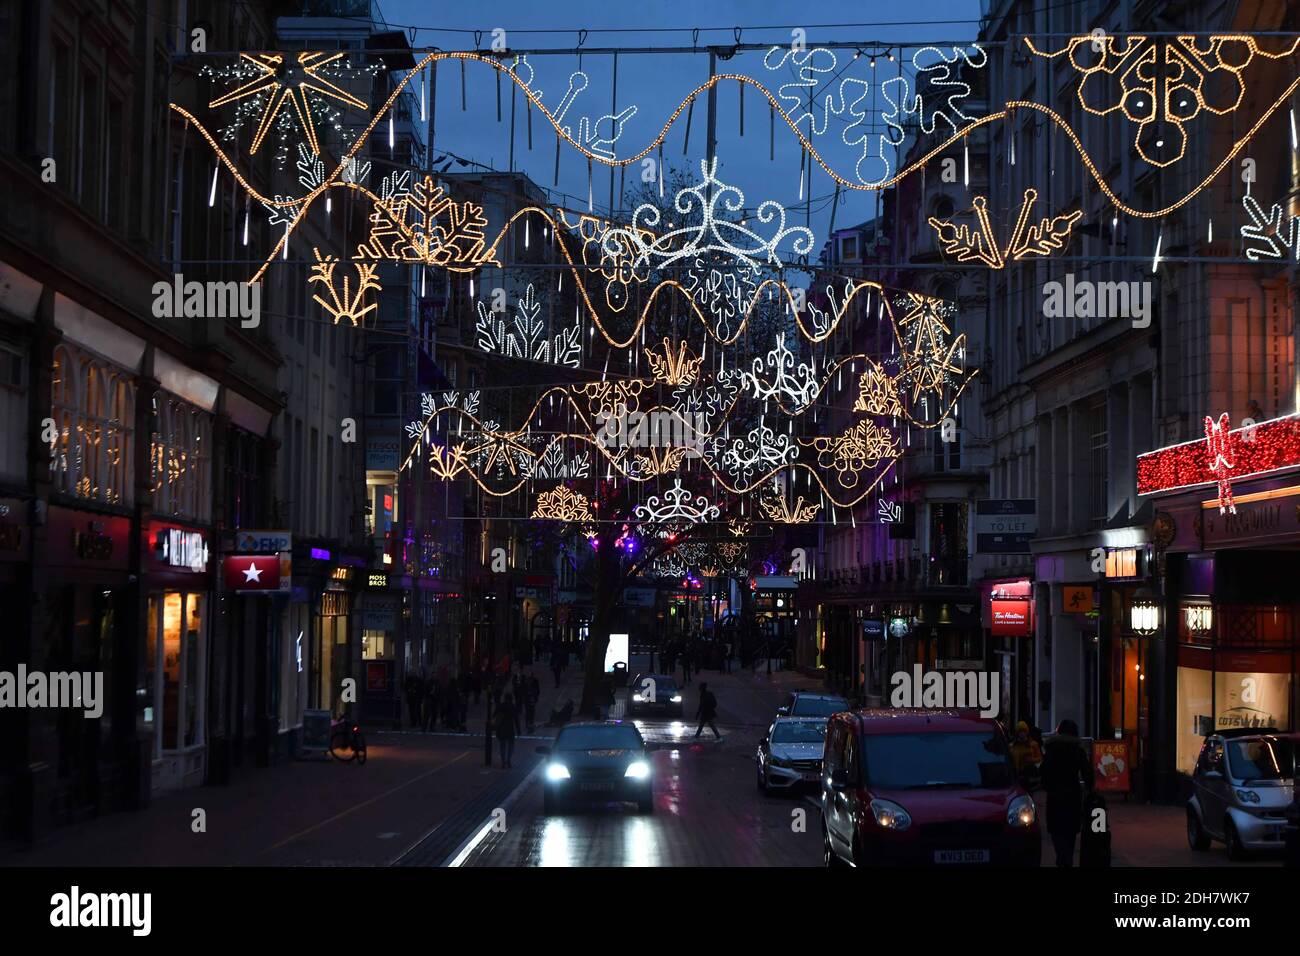 Nella foto, le luci natalizie di Birmingham si accendono per la prossima stagione festiva a New Street e Victoria Square, giovedì 12 novembre 2020. Foto Stock